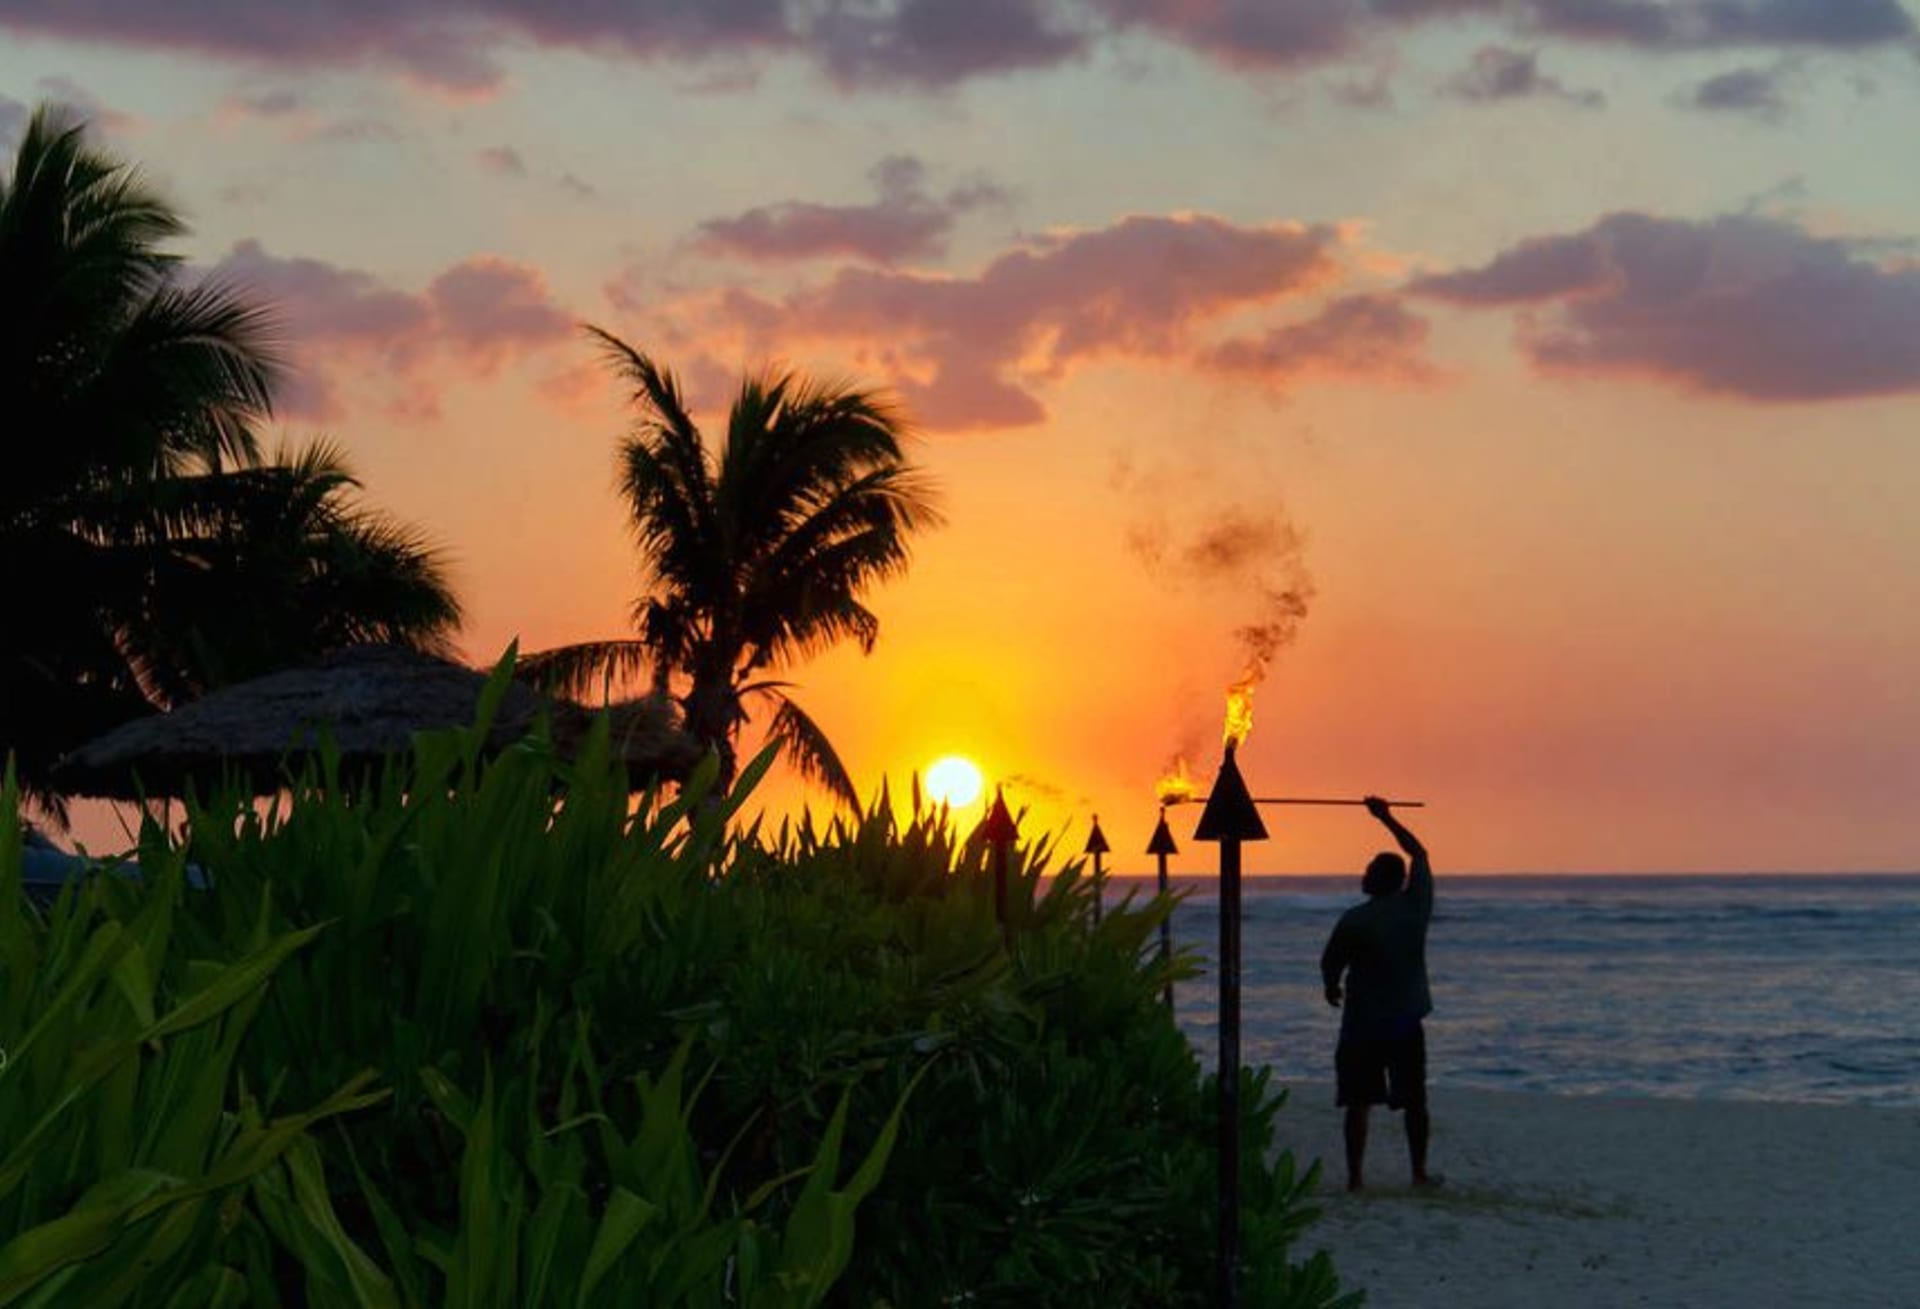 Zapadá slunce, je čas na večerní osvětlení na fidžijských plážích